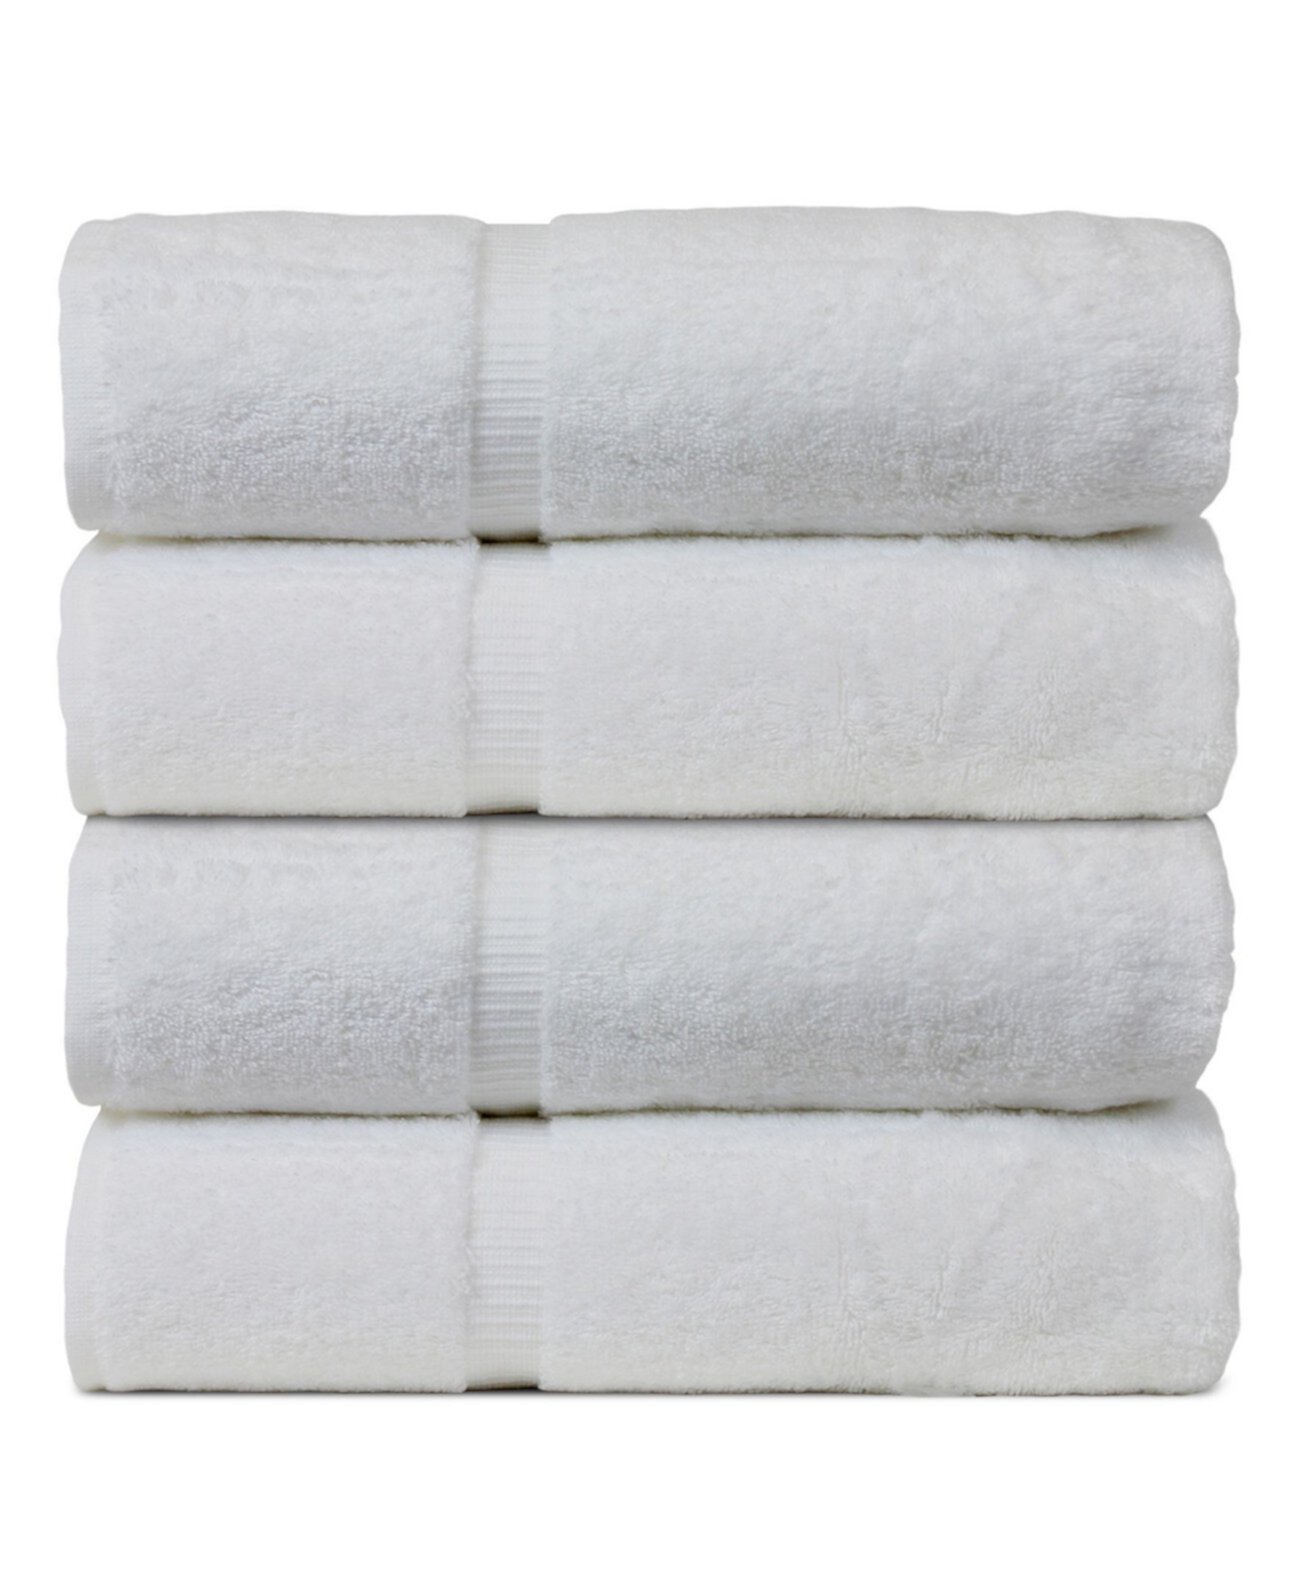 Luxury Hotel Spa Towel Турецкие хлопковые банные полотенца, набор из 4 BC